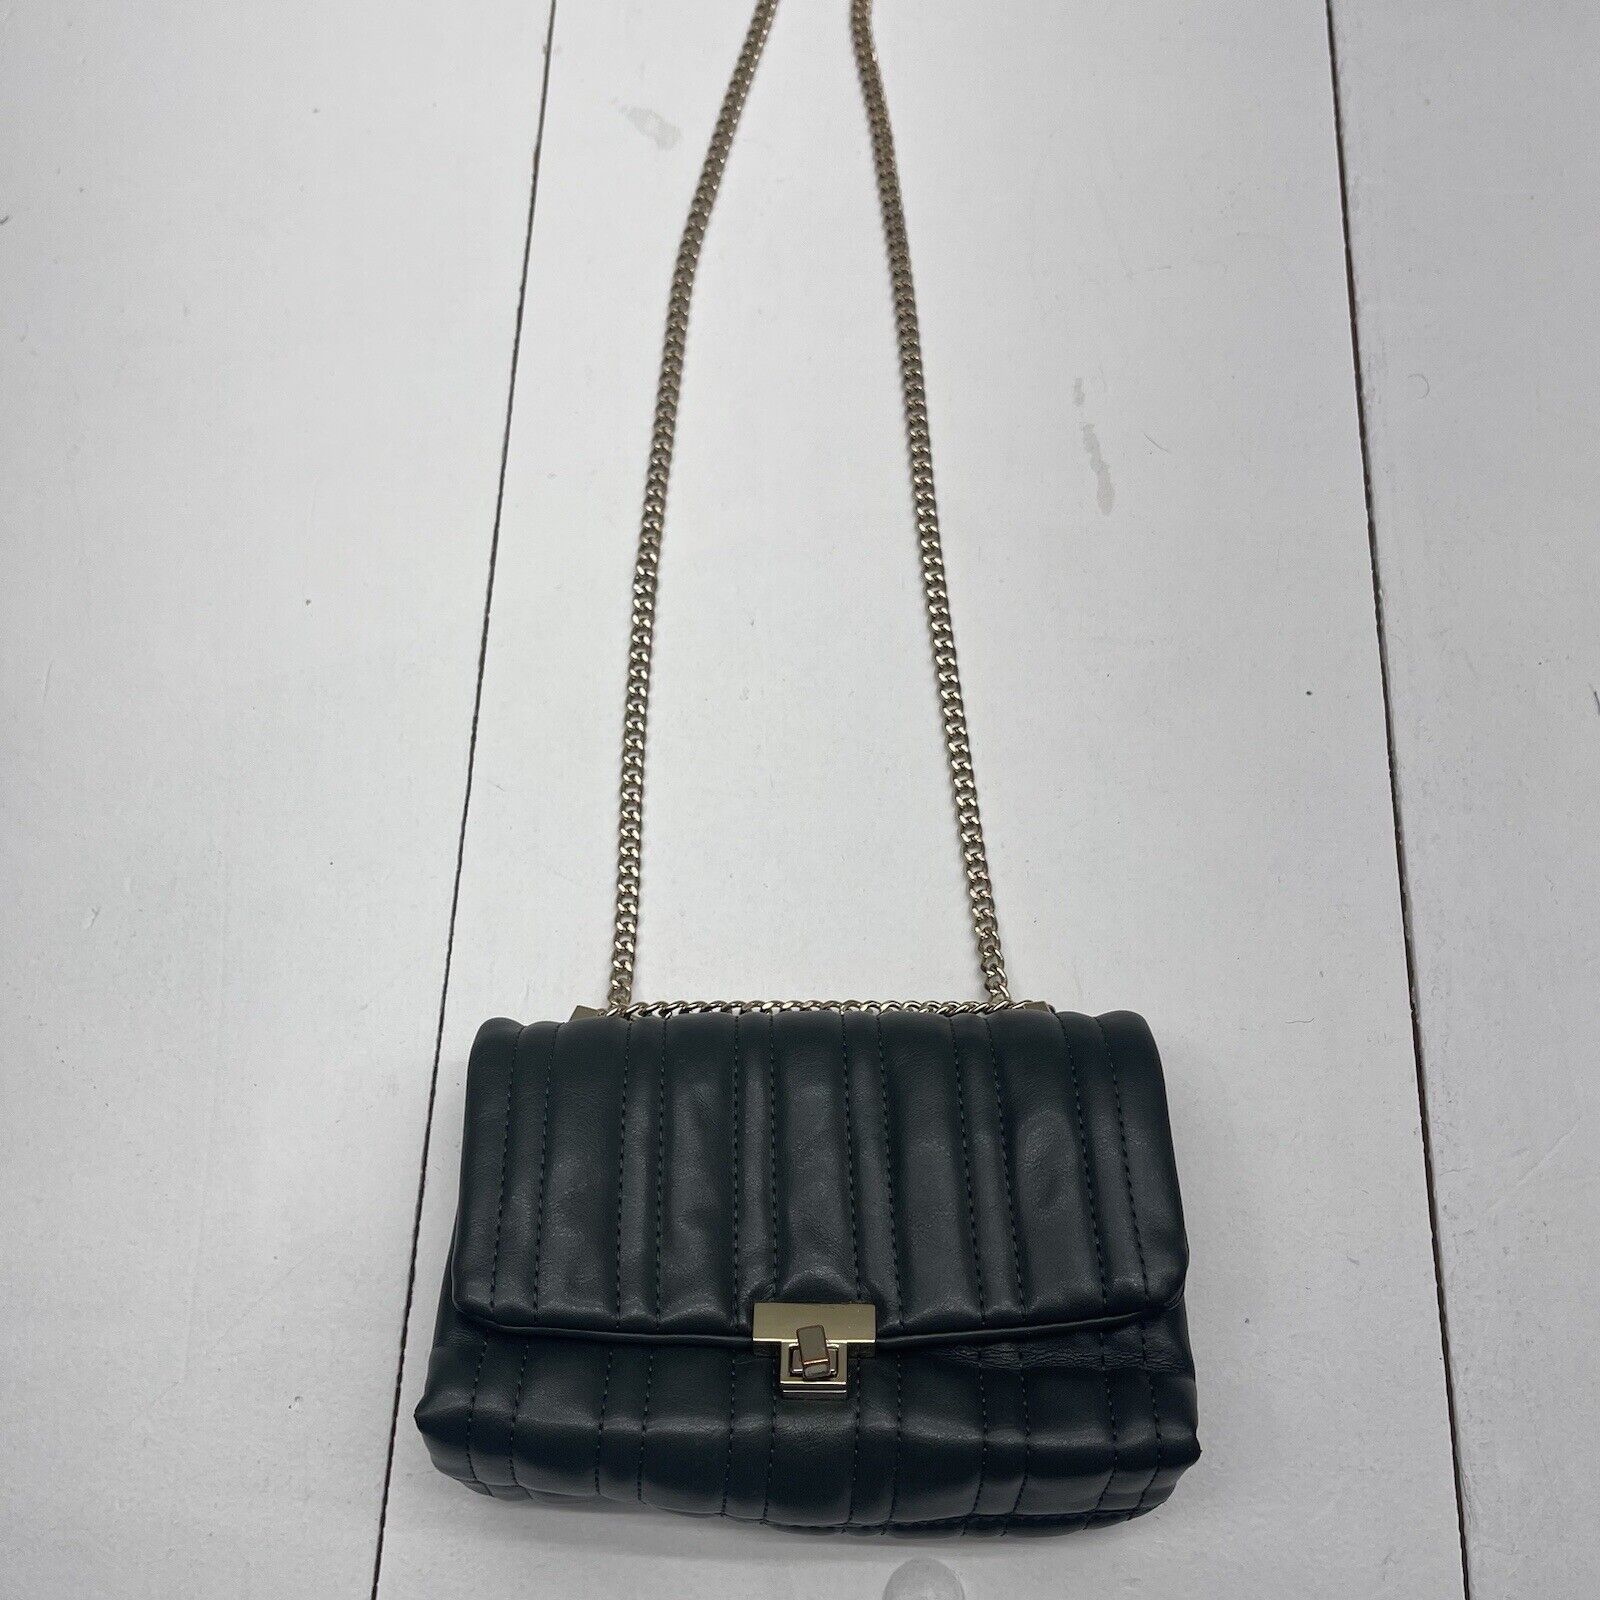 Plain Zara Hand Bags at Rs 950/piece in Virar | ID: 22490756273